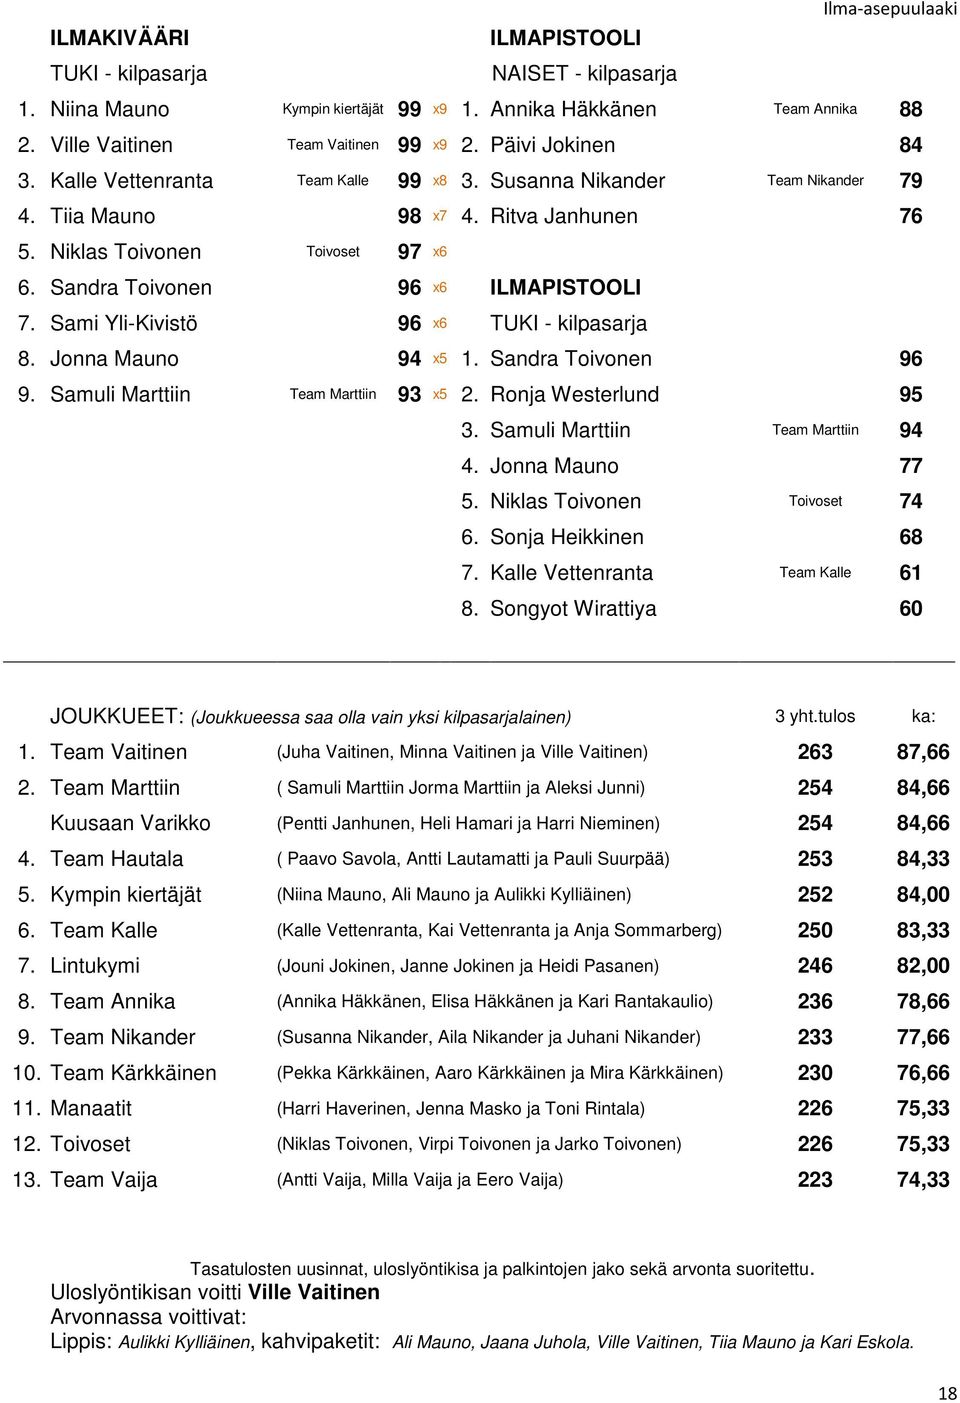 Sami Yli-Kivistö 96 x6 TUKI - kilpasarja 8. Jonna Mauno 94 x5 1. Sandra Toivonen 96 9. Samuli Marttiin Team Marttiin 93 x5 2. Ronja Westerlund 95 3. Samuli Marttiin Team Marttiin 94 4.